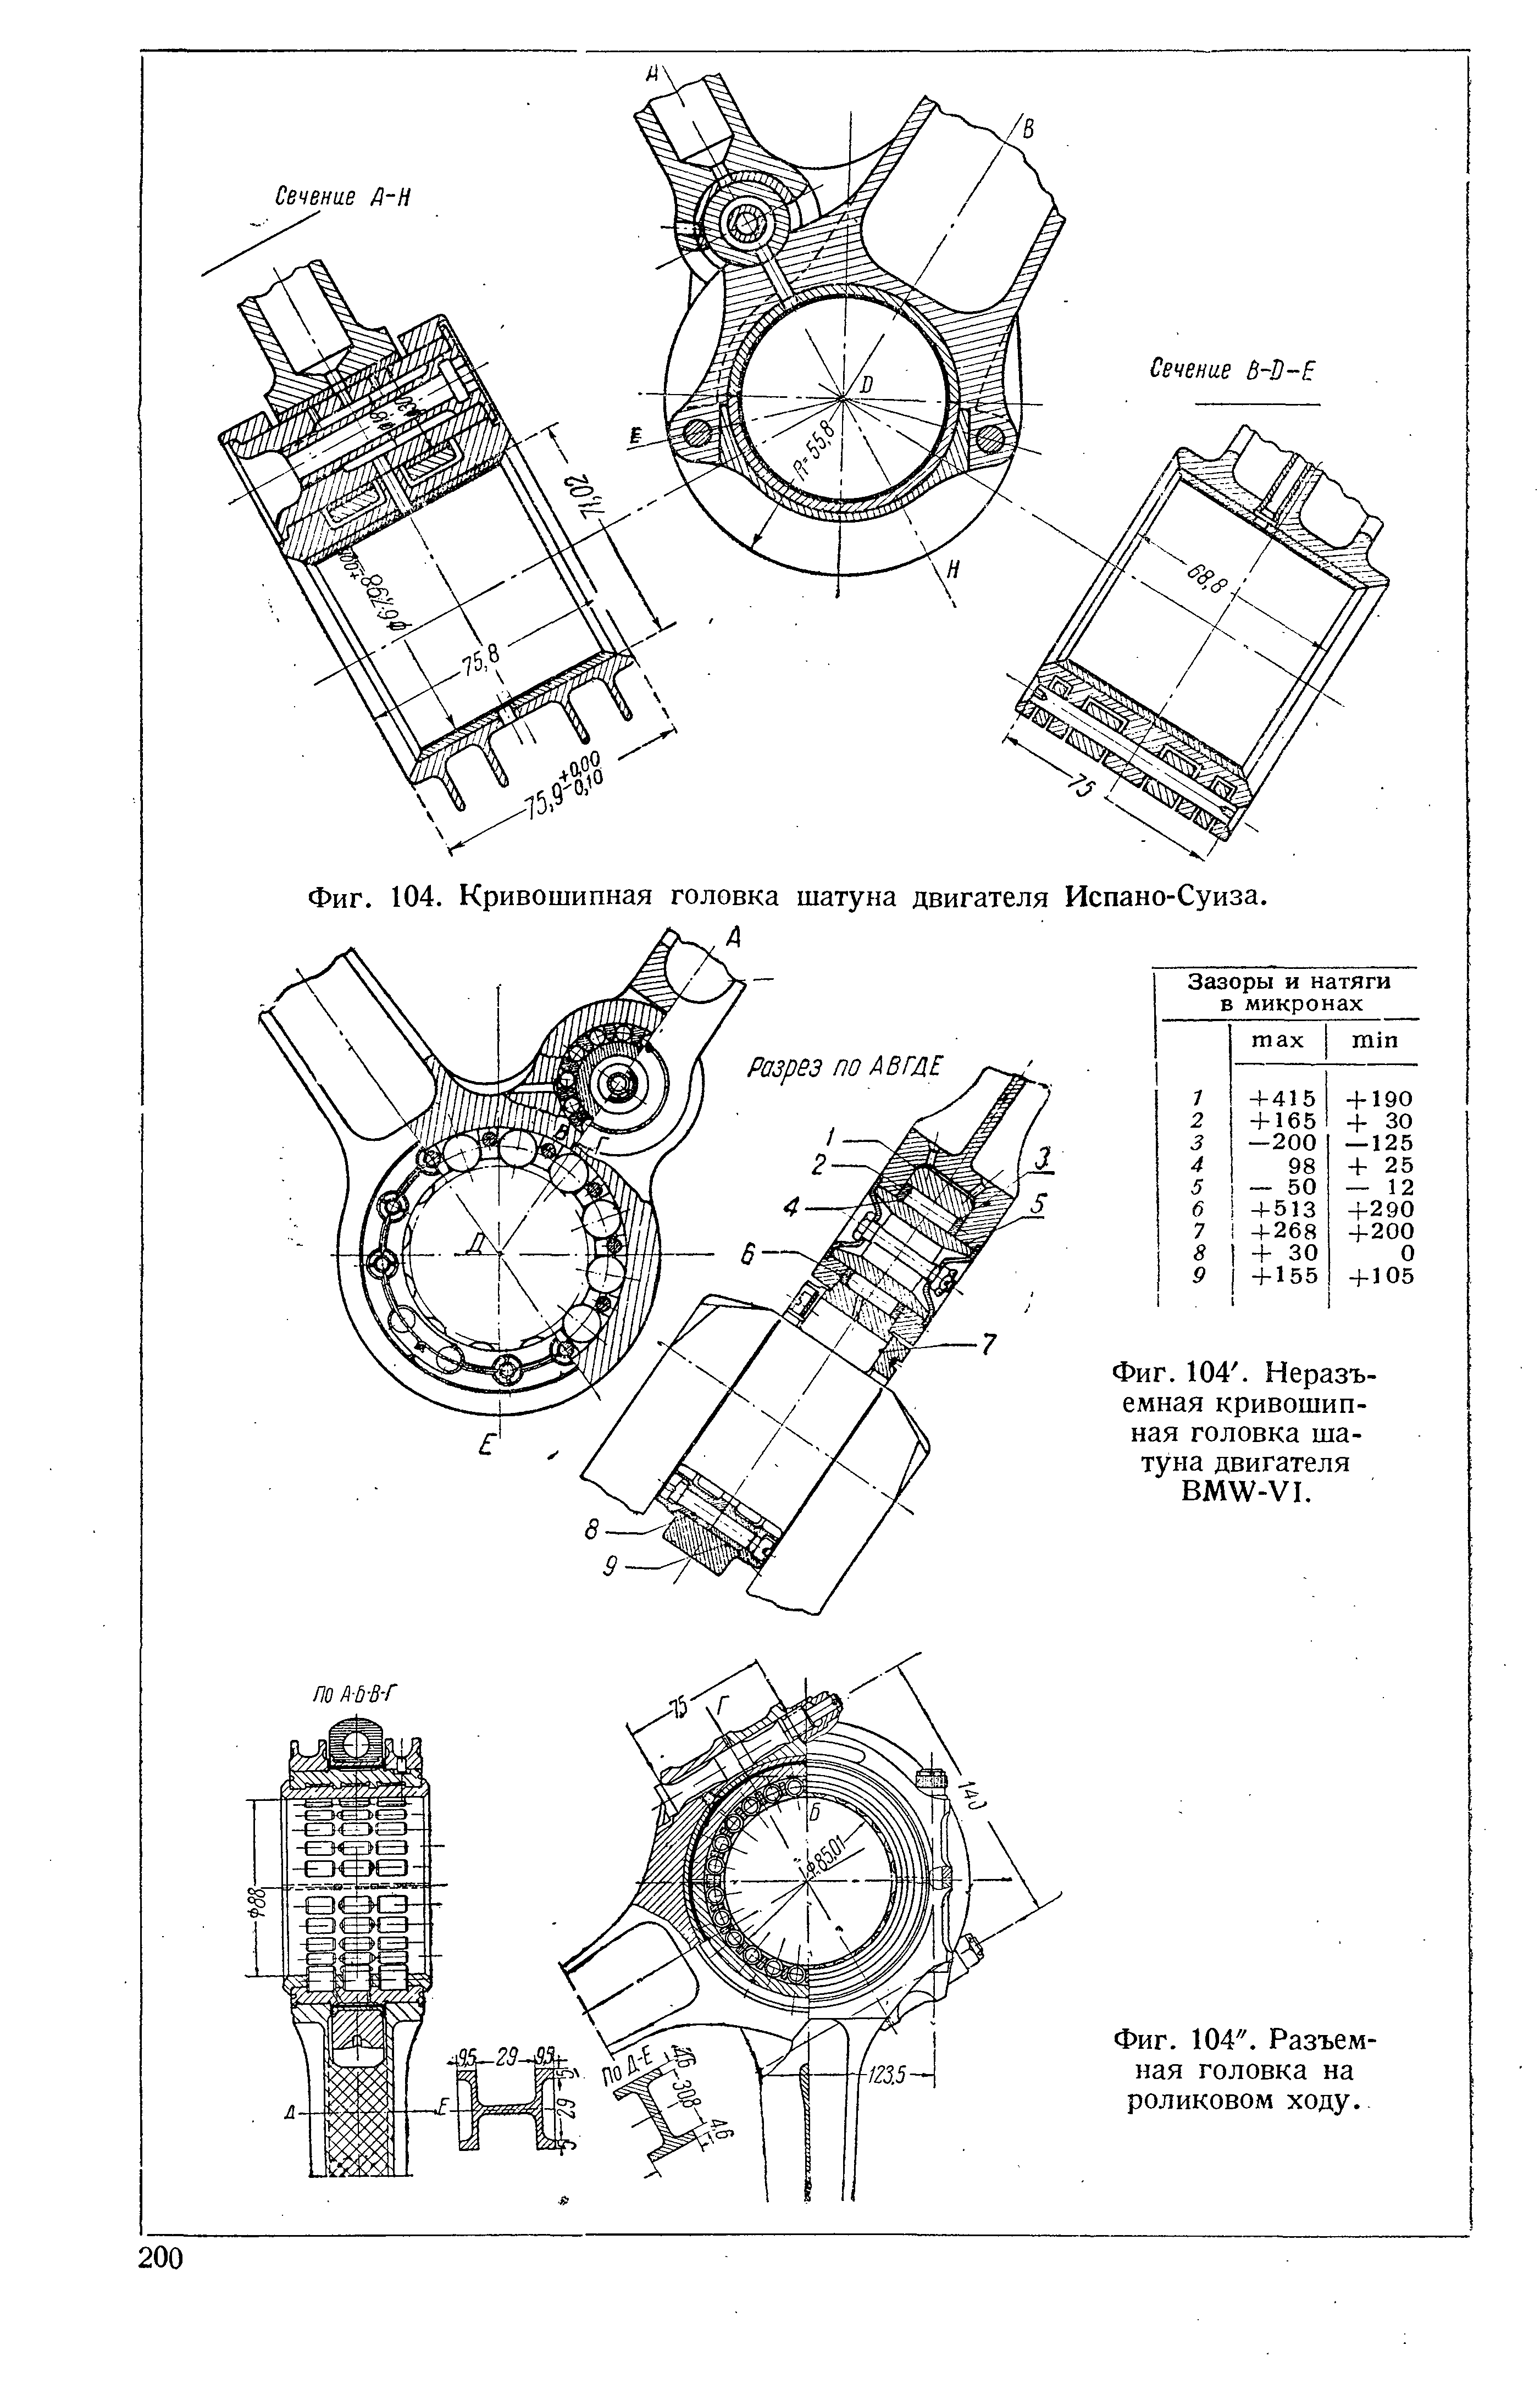 Фиг. 104. Неразъемная кривошипная головка шатуна двигателя ВМШ-У1.
